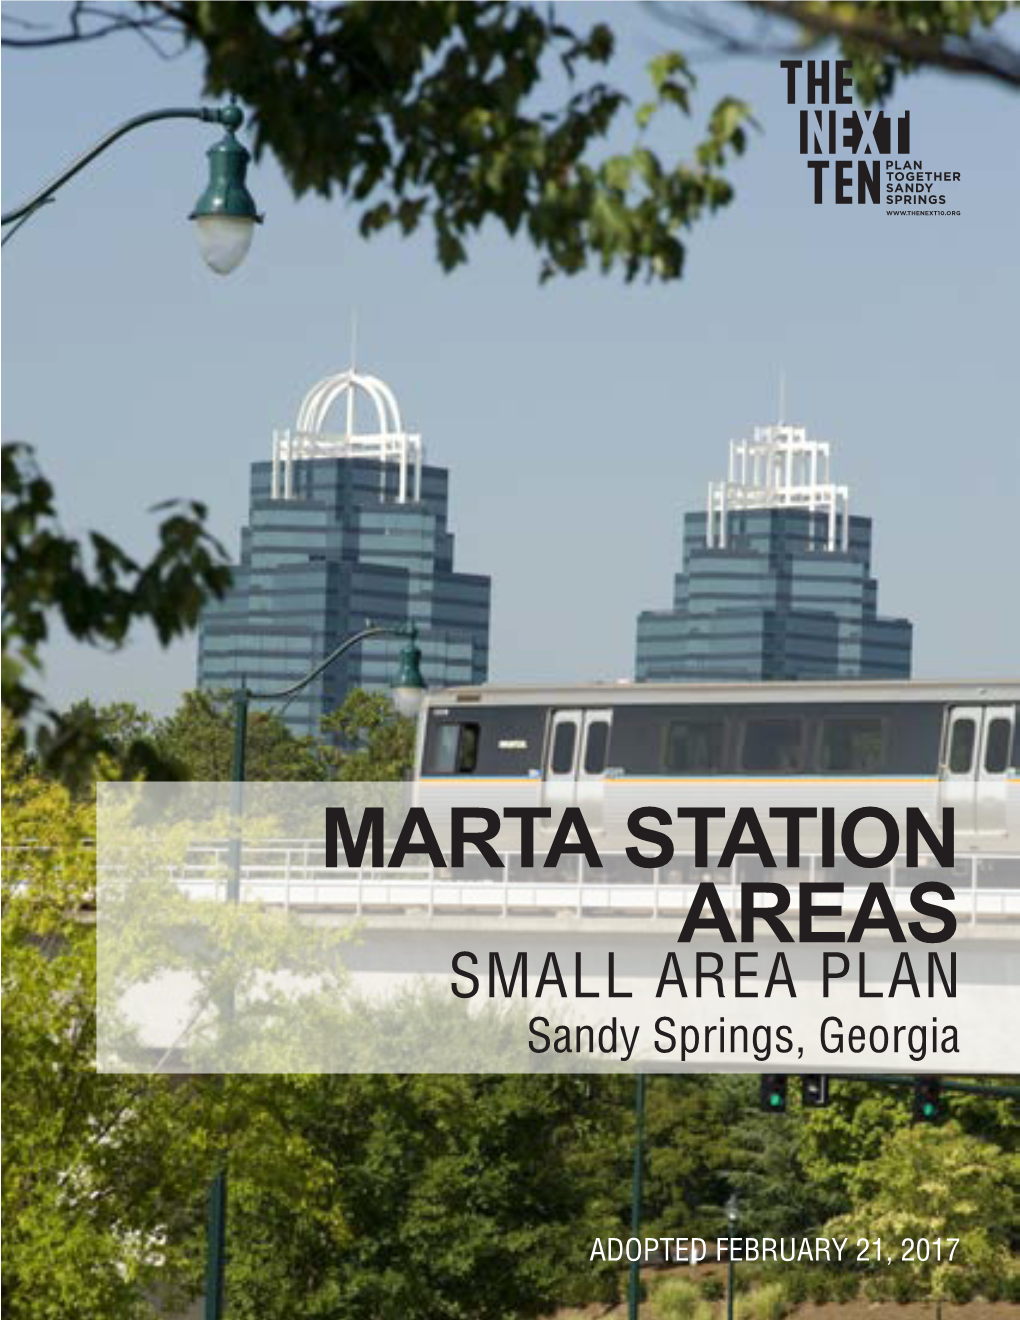 MARTA STATION AREAS SMALL AREA PLAN Sandy Springs, Georgia